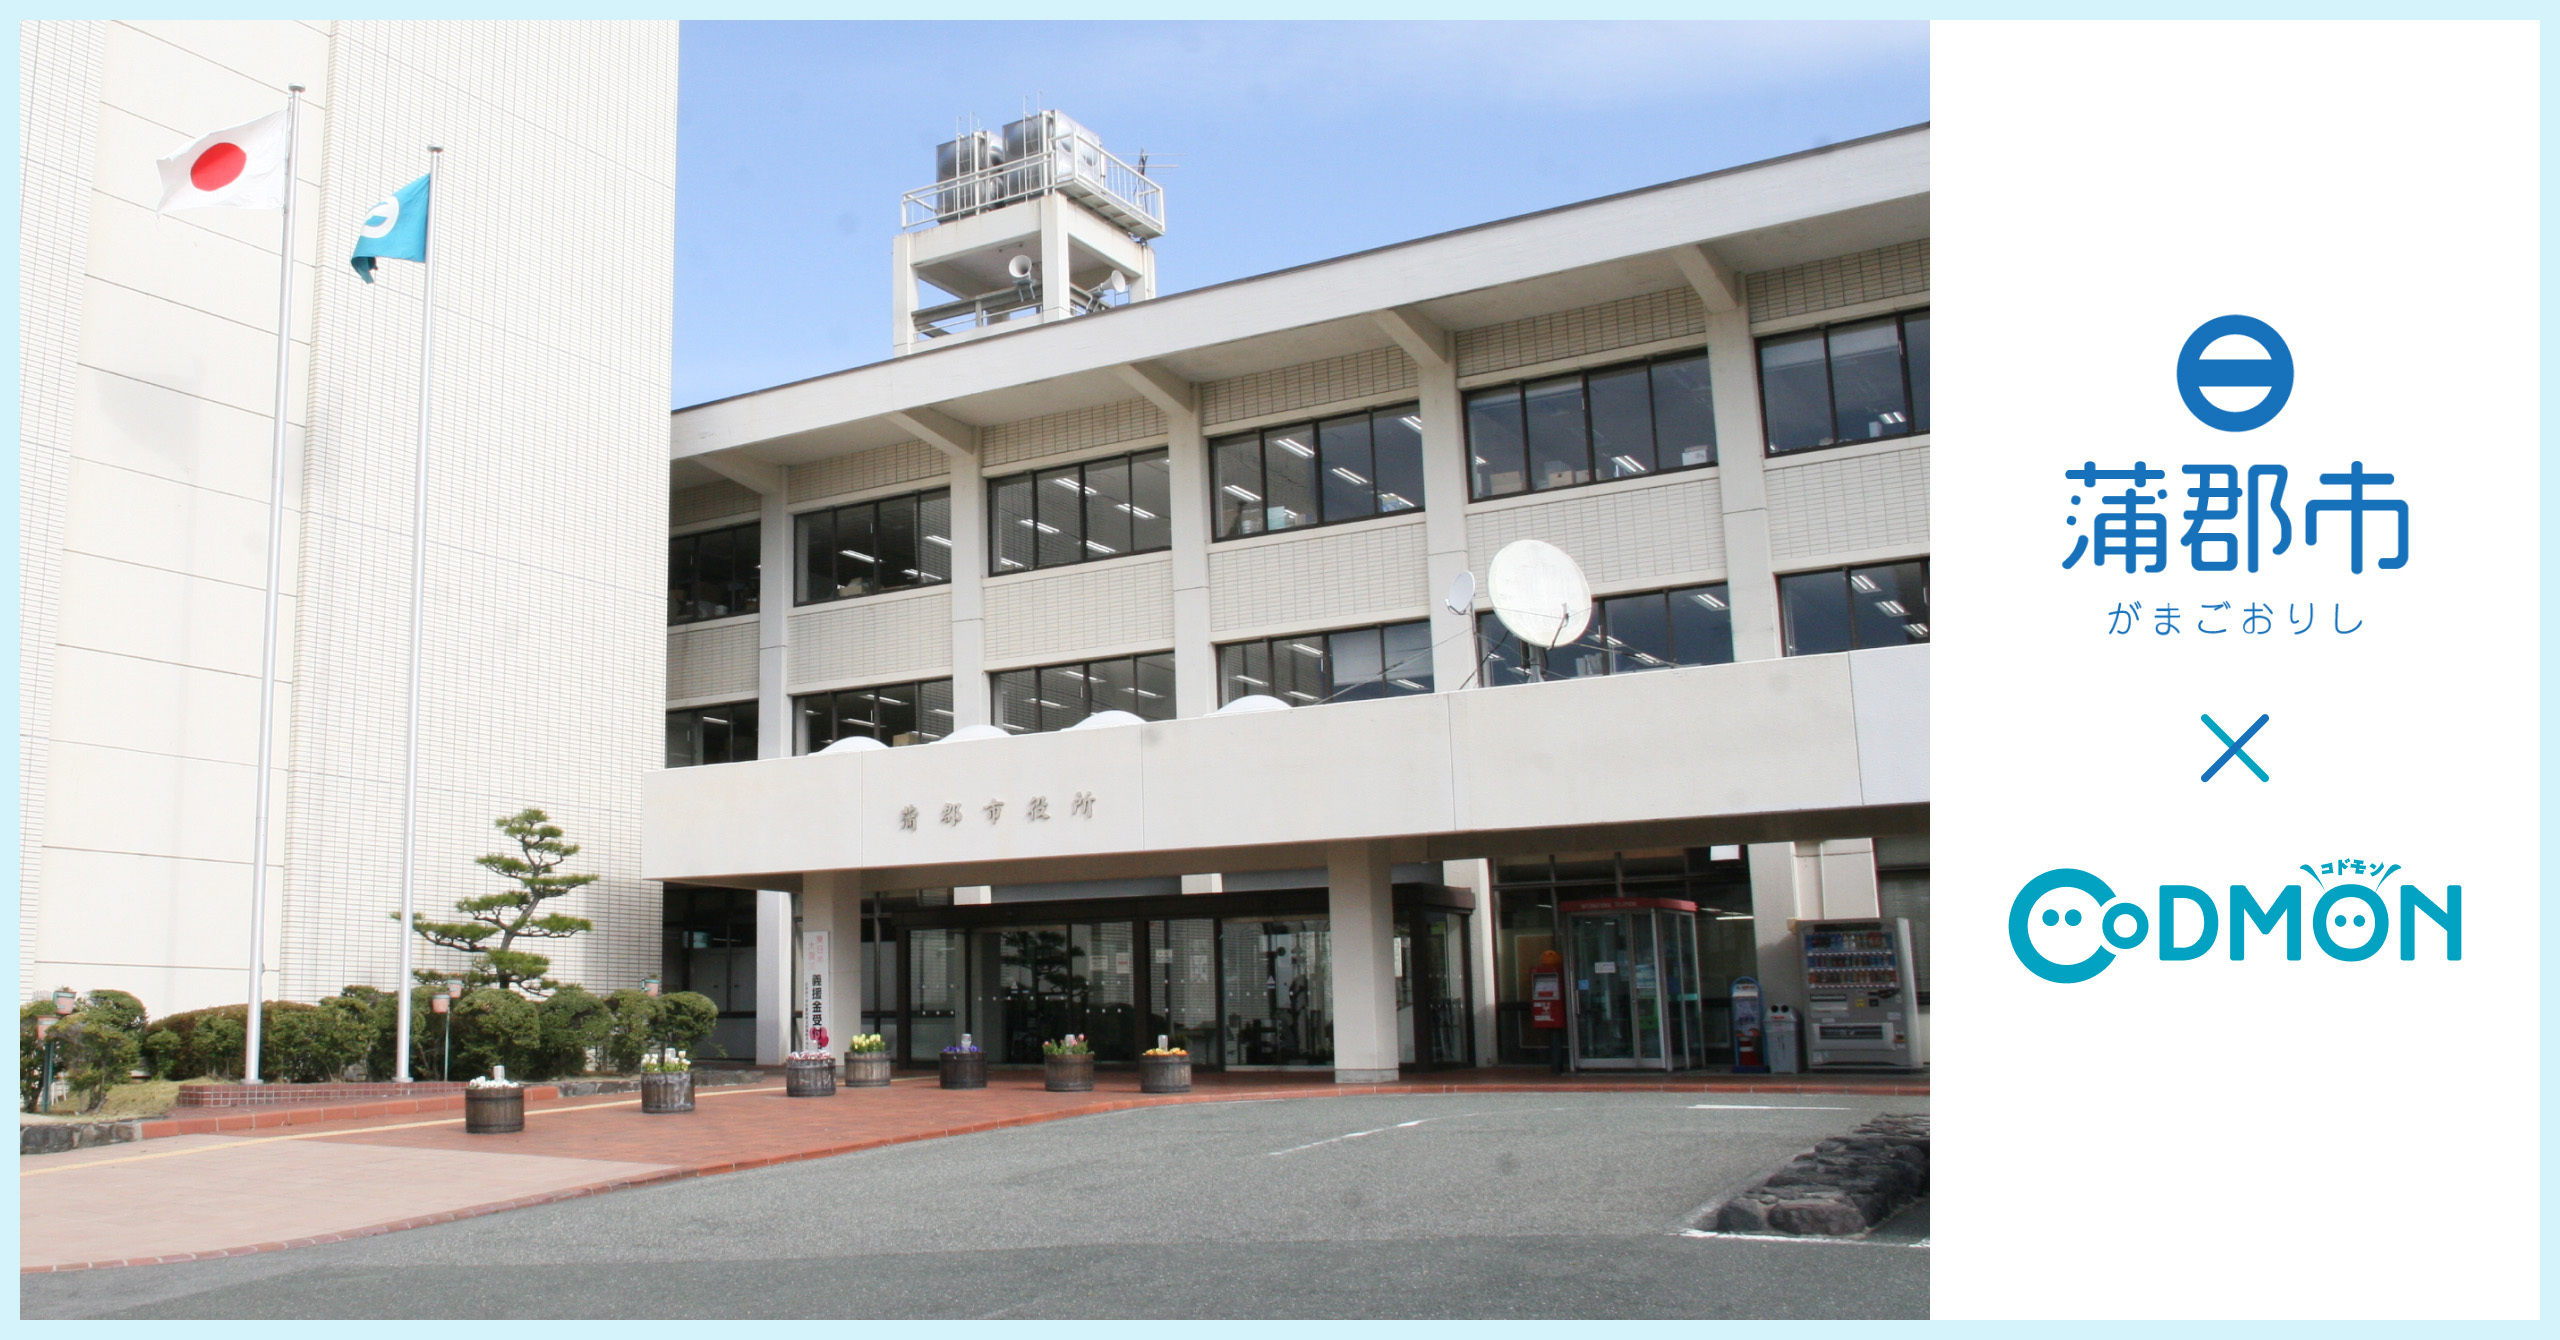 コドモン、愛知県蒲郡市の児童クラブにおいて 保育・教育施設向けICTサービス「CoDMON」導入